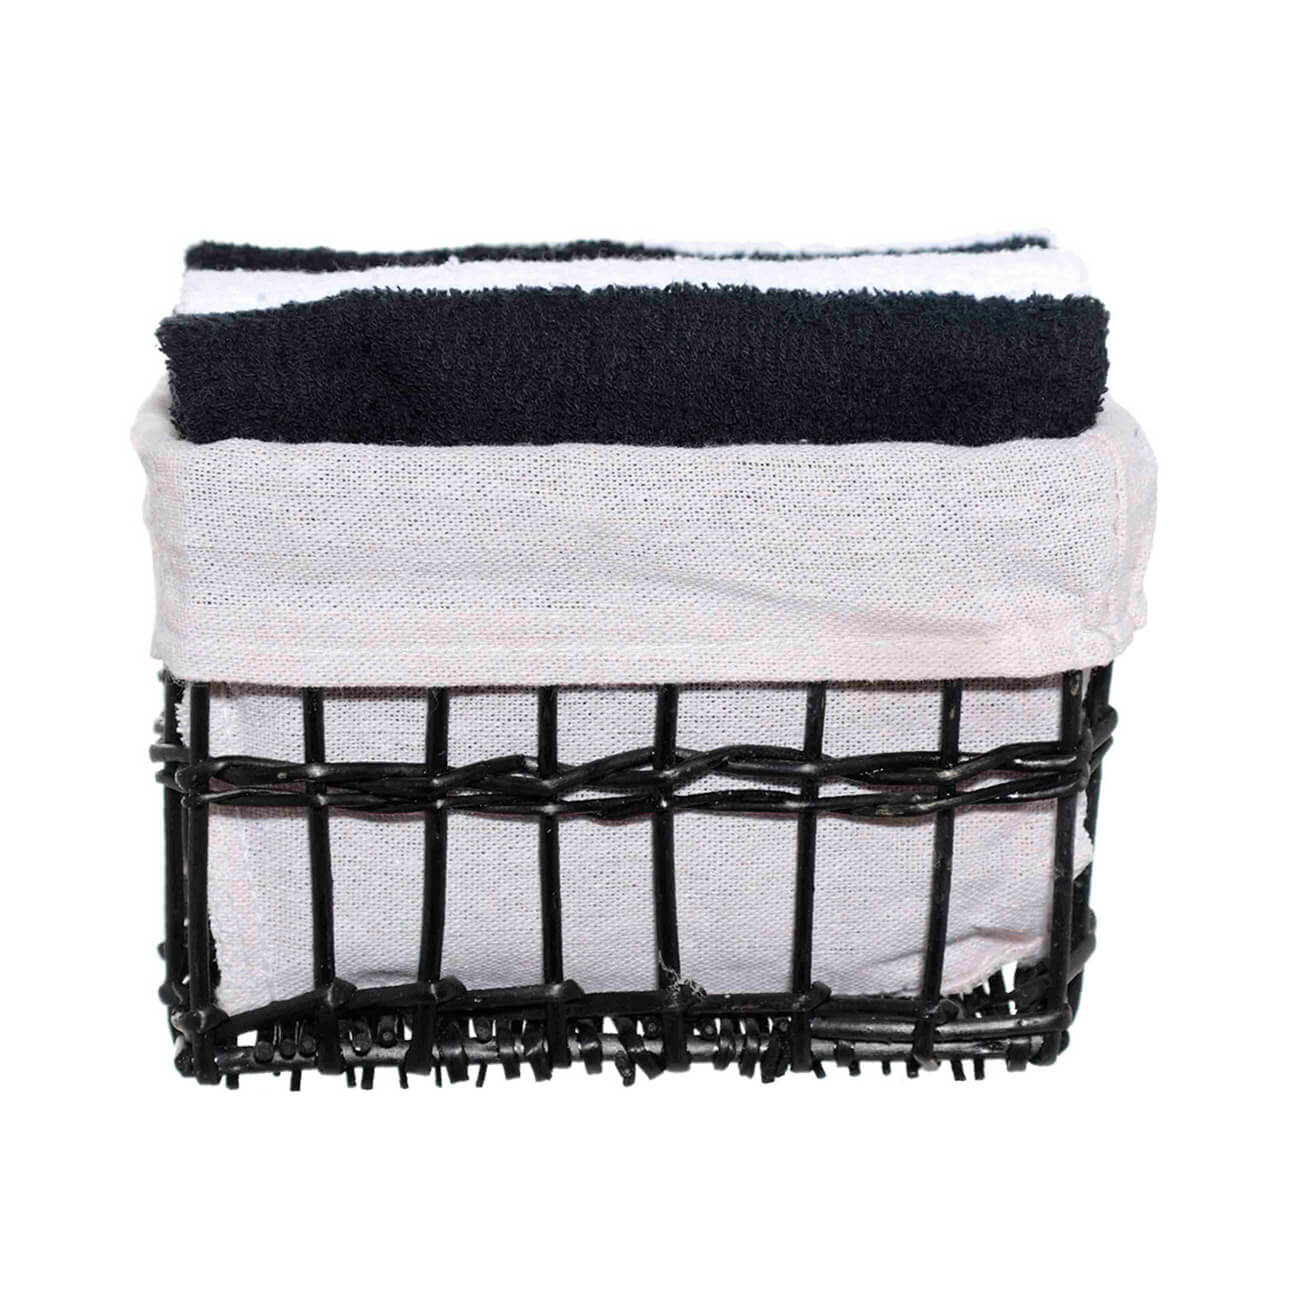 Полотенце, 30х30 см, 4 шт, в корзине, хлопок/лоза, черное/белое, Basket towel полотенце xiaomi bath towel zsh youth series 140 70 оранжевое